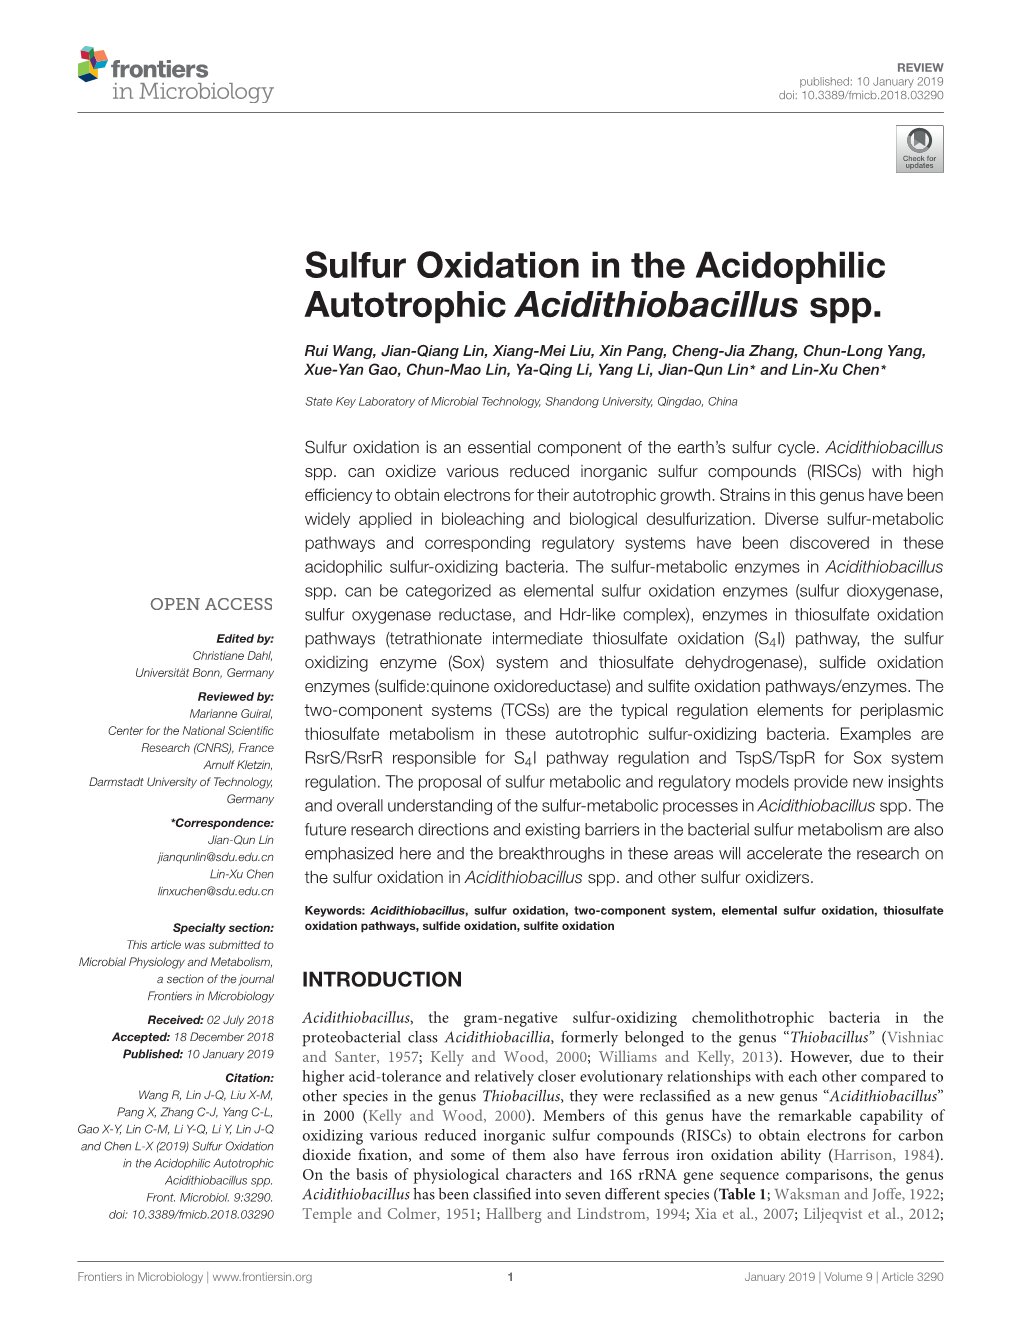 Sulfur Oxidation in the Acidophilic Autotrophic Acidithiobacillus Spp